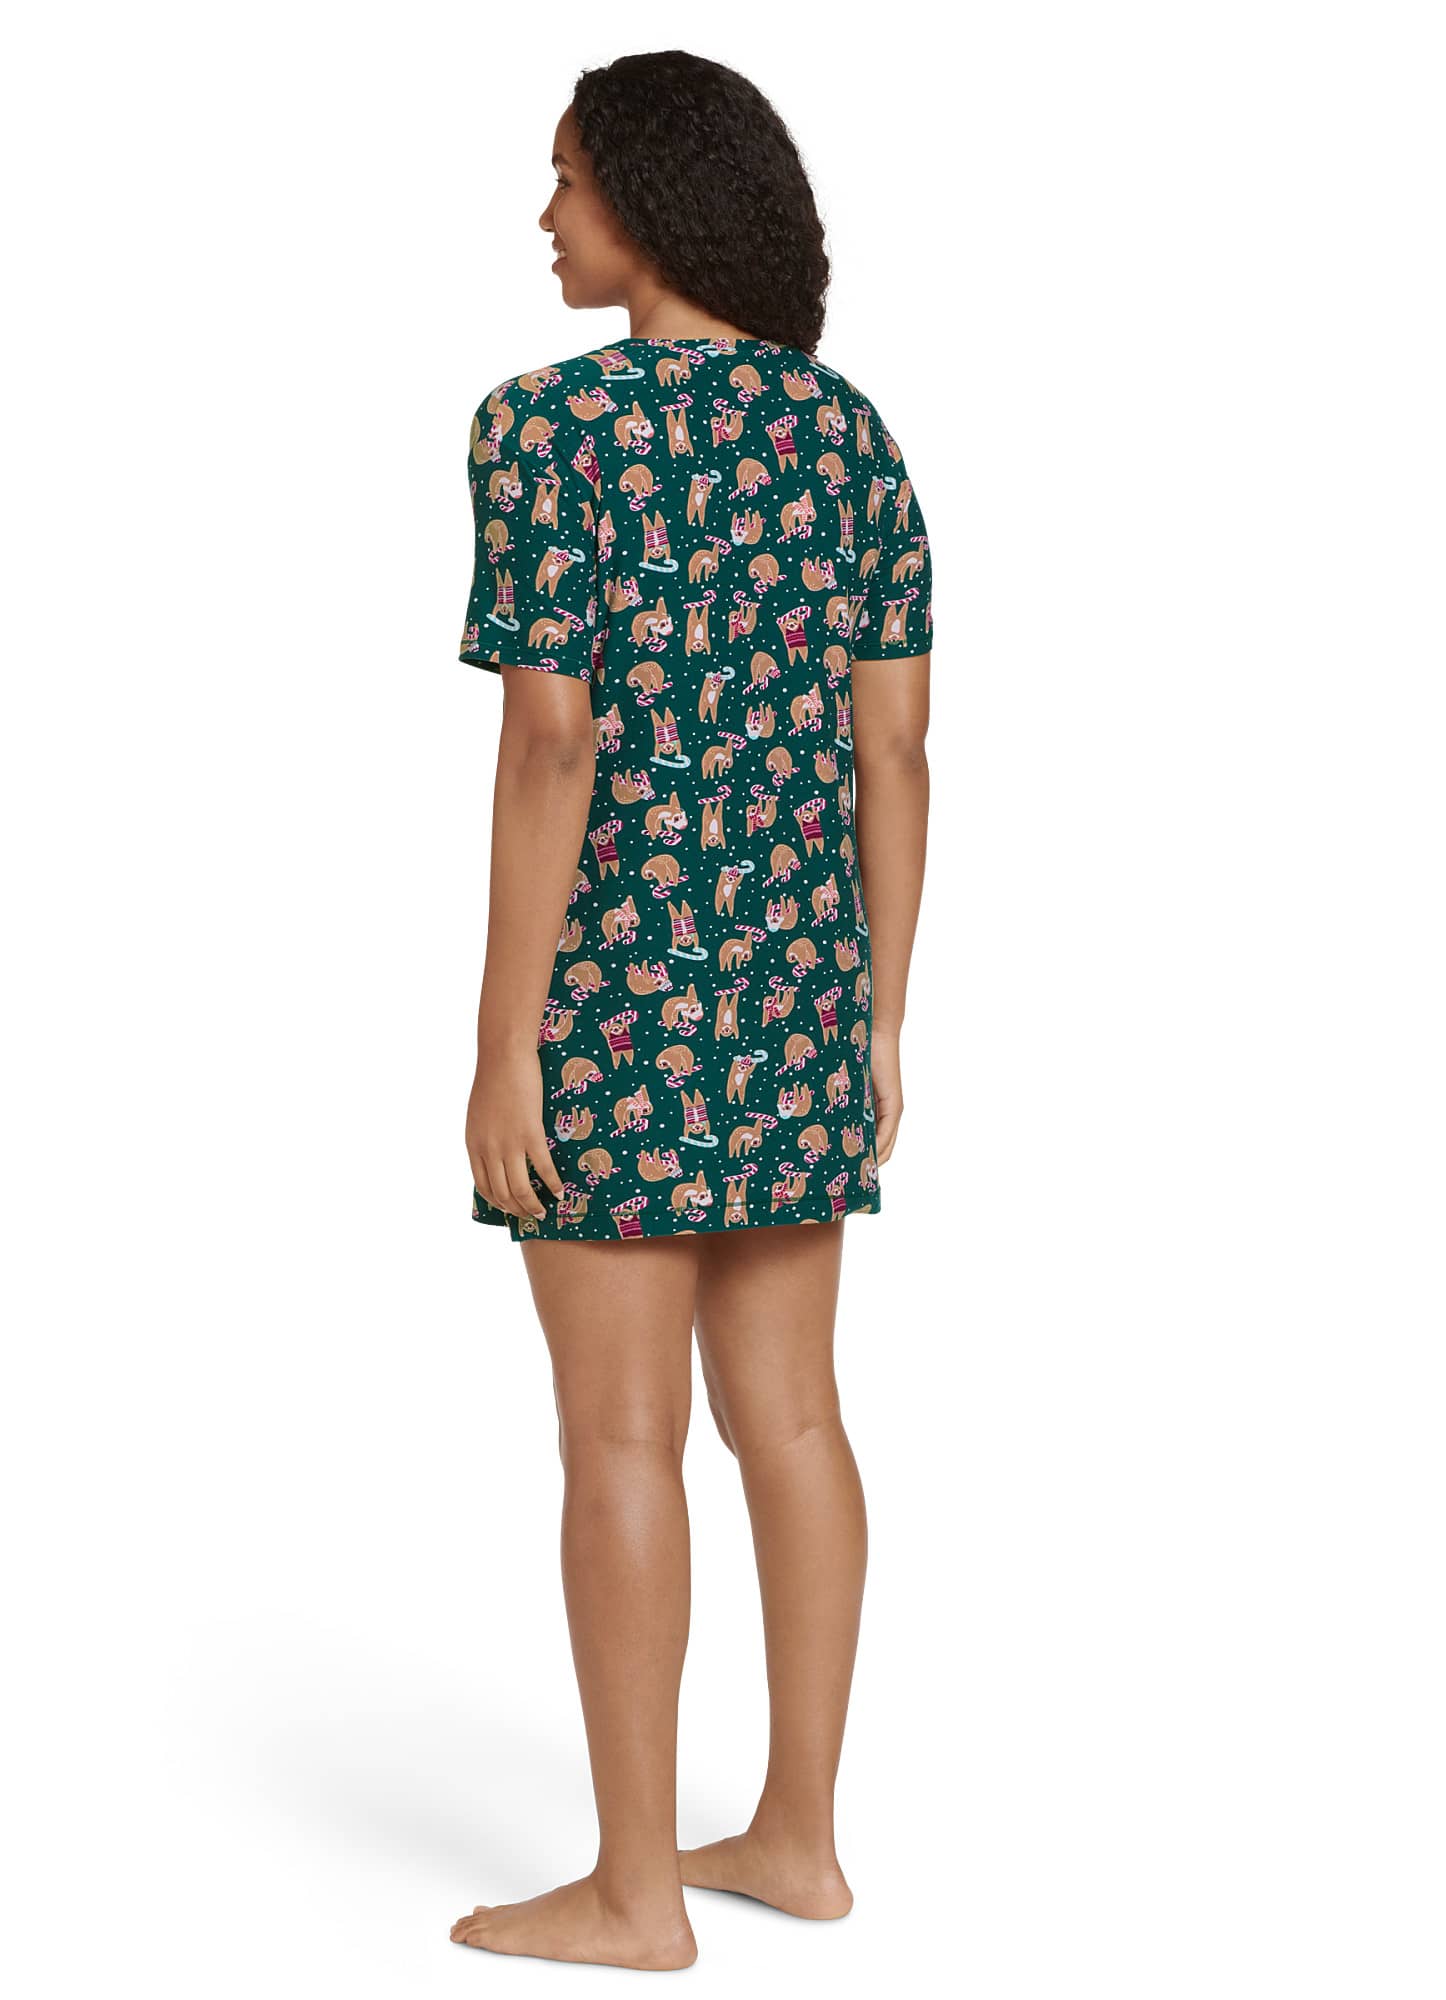 Jockey Women's Soft Essentials Short Sleeve Sleepshirt - Walmart.com